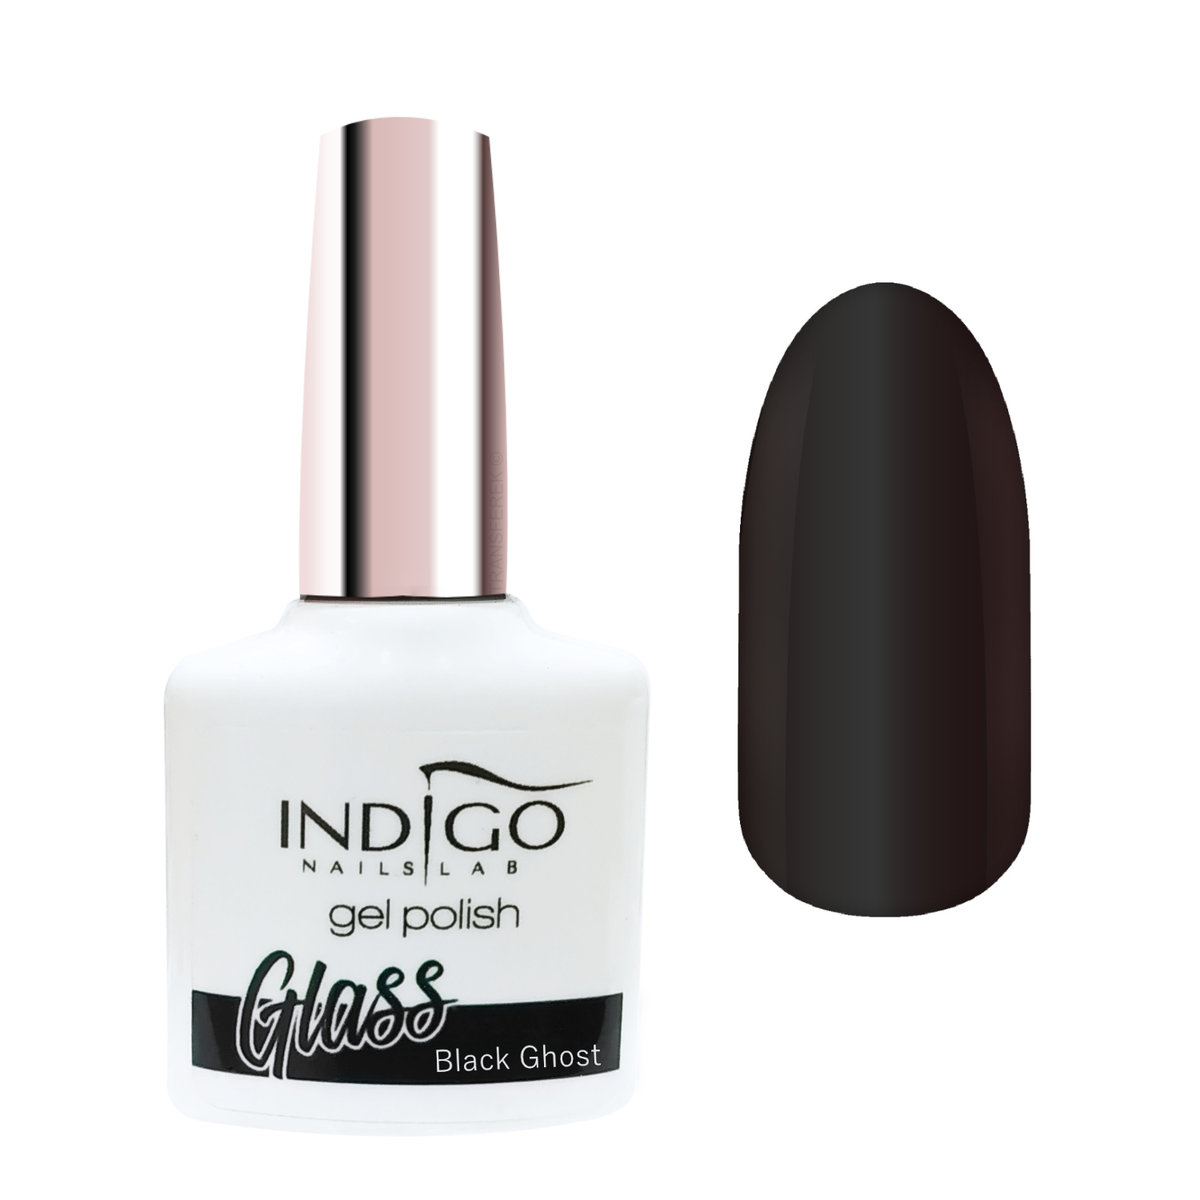 Indigo Black Ghost Glass lakiery hybrydowy 7ml